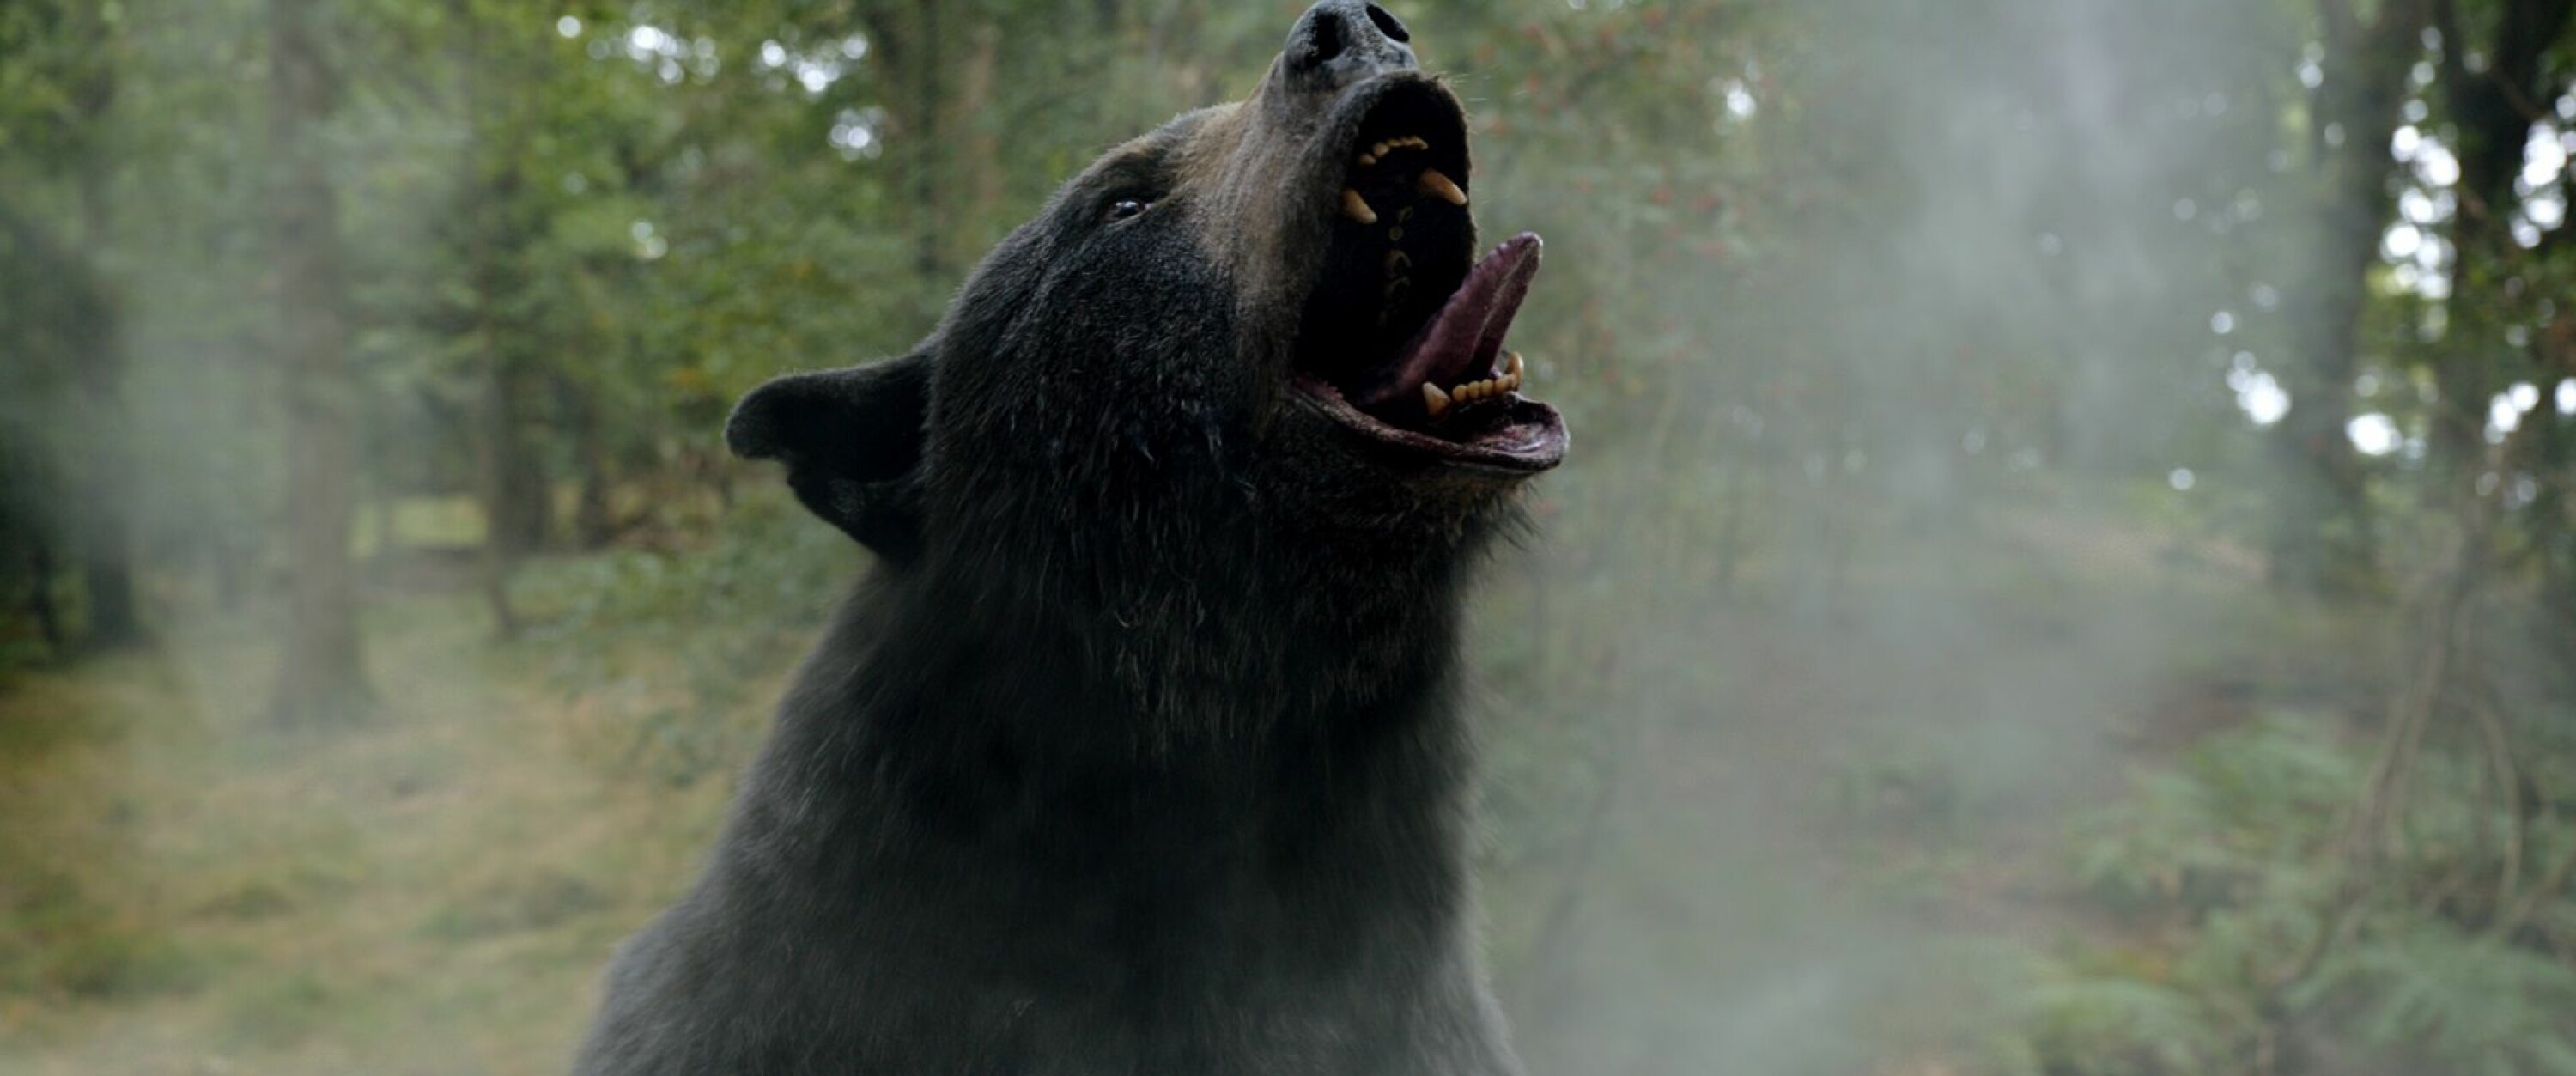 HVA SKJULER SEG I DEN HVITE VINDEN?: Avhengigheten får frem bjørnens mørke sider